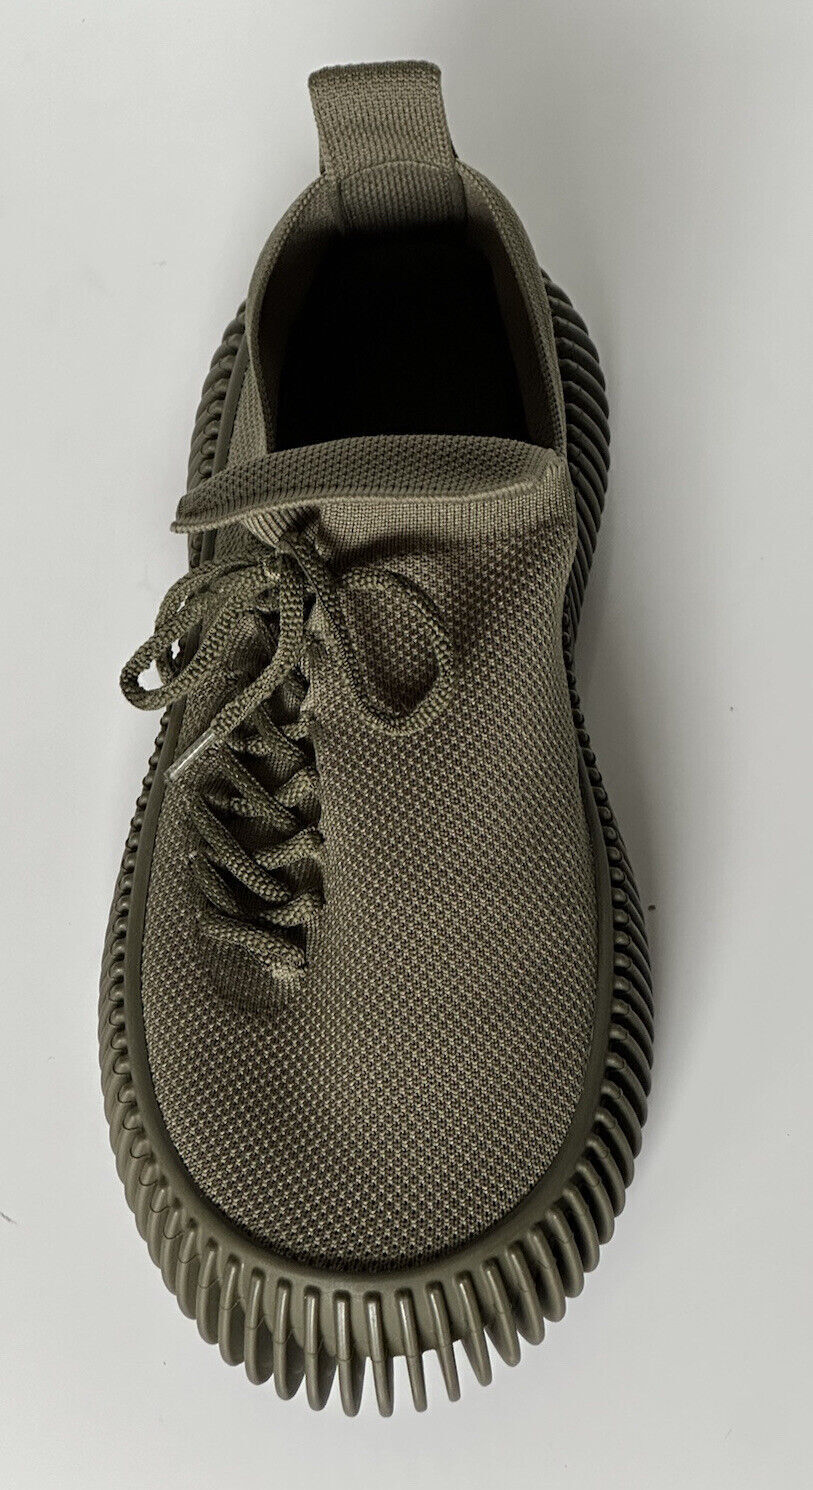 Мужские кроссовки эластичного цвета цвета хаки Bottega Veneta 920 долларов США (43) 690112 